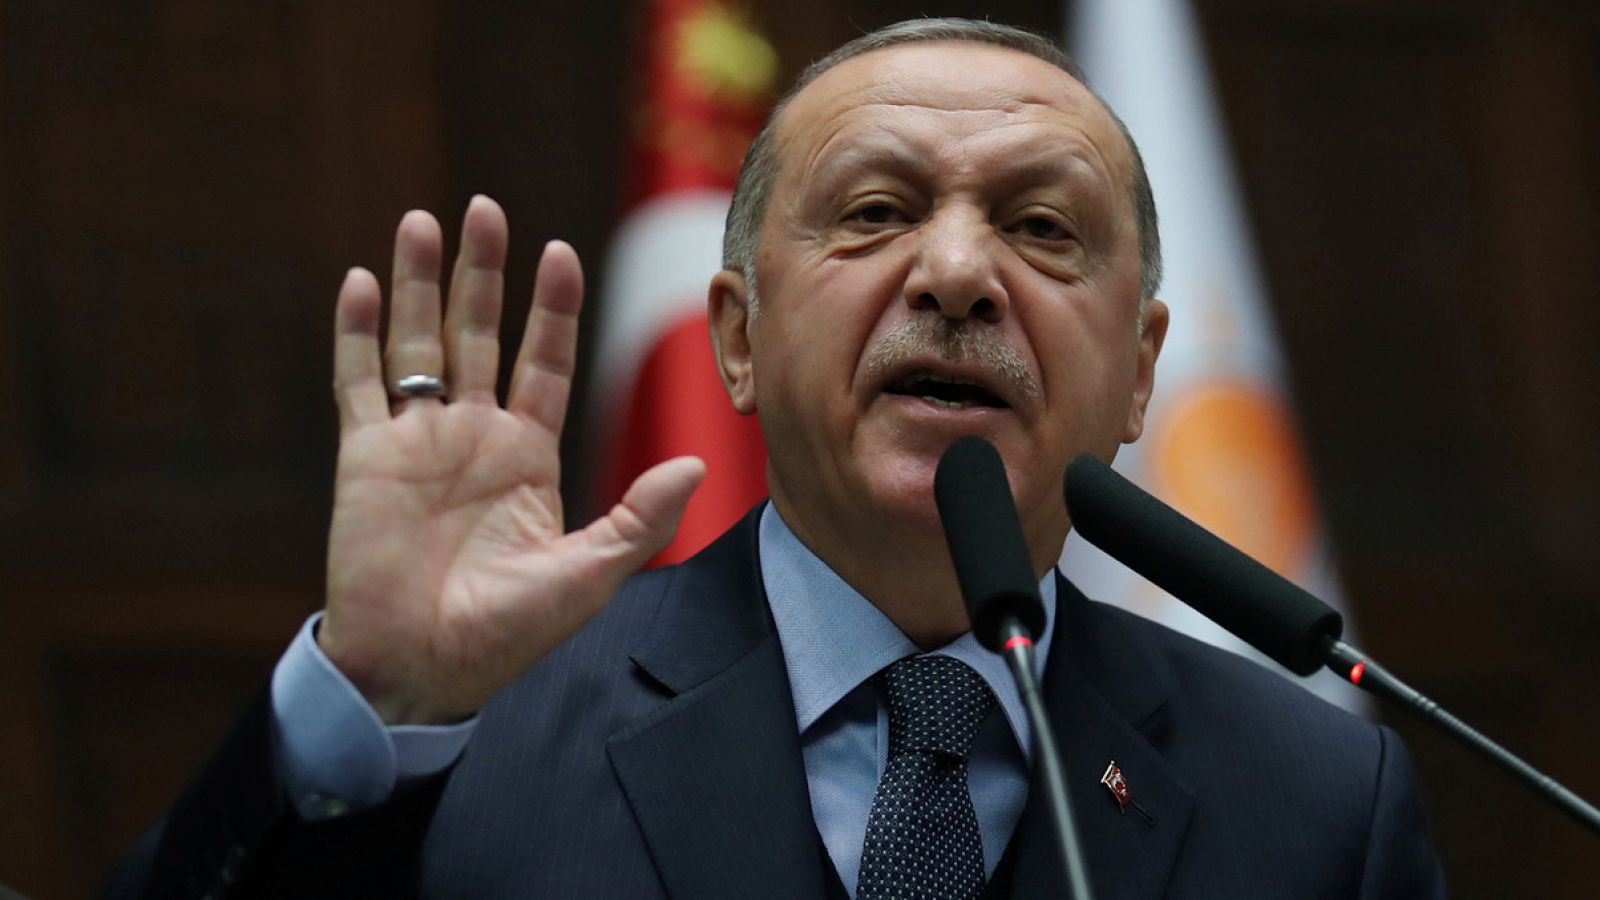 El presidente turco, Recep Tayyip Erdogan, se dirige a miembros de su patido en el Parlamento en Ankara. REUTERS/Umit Bektas